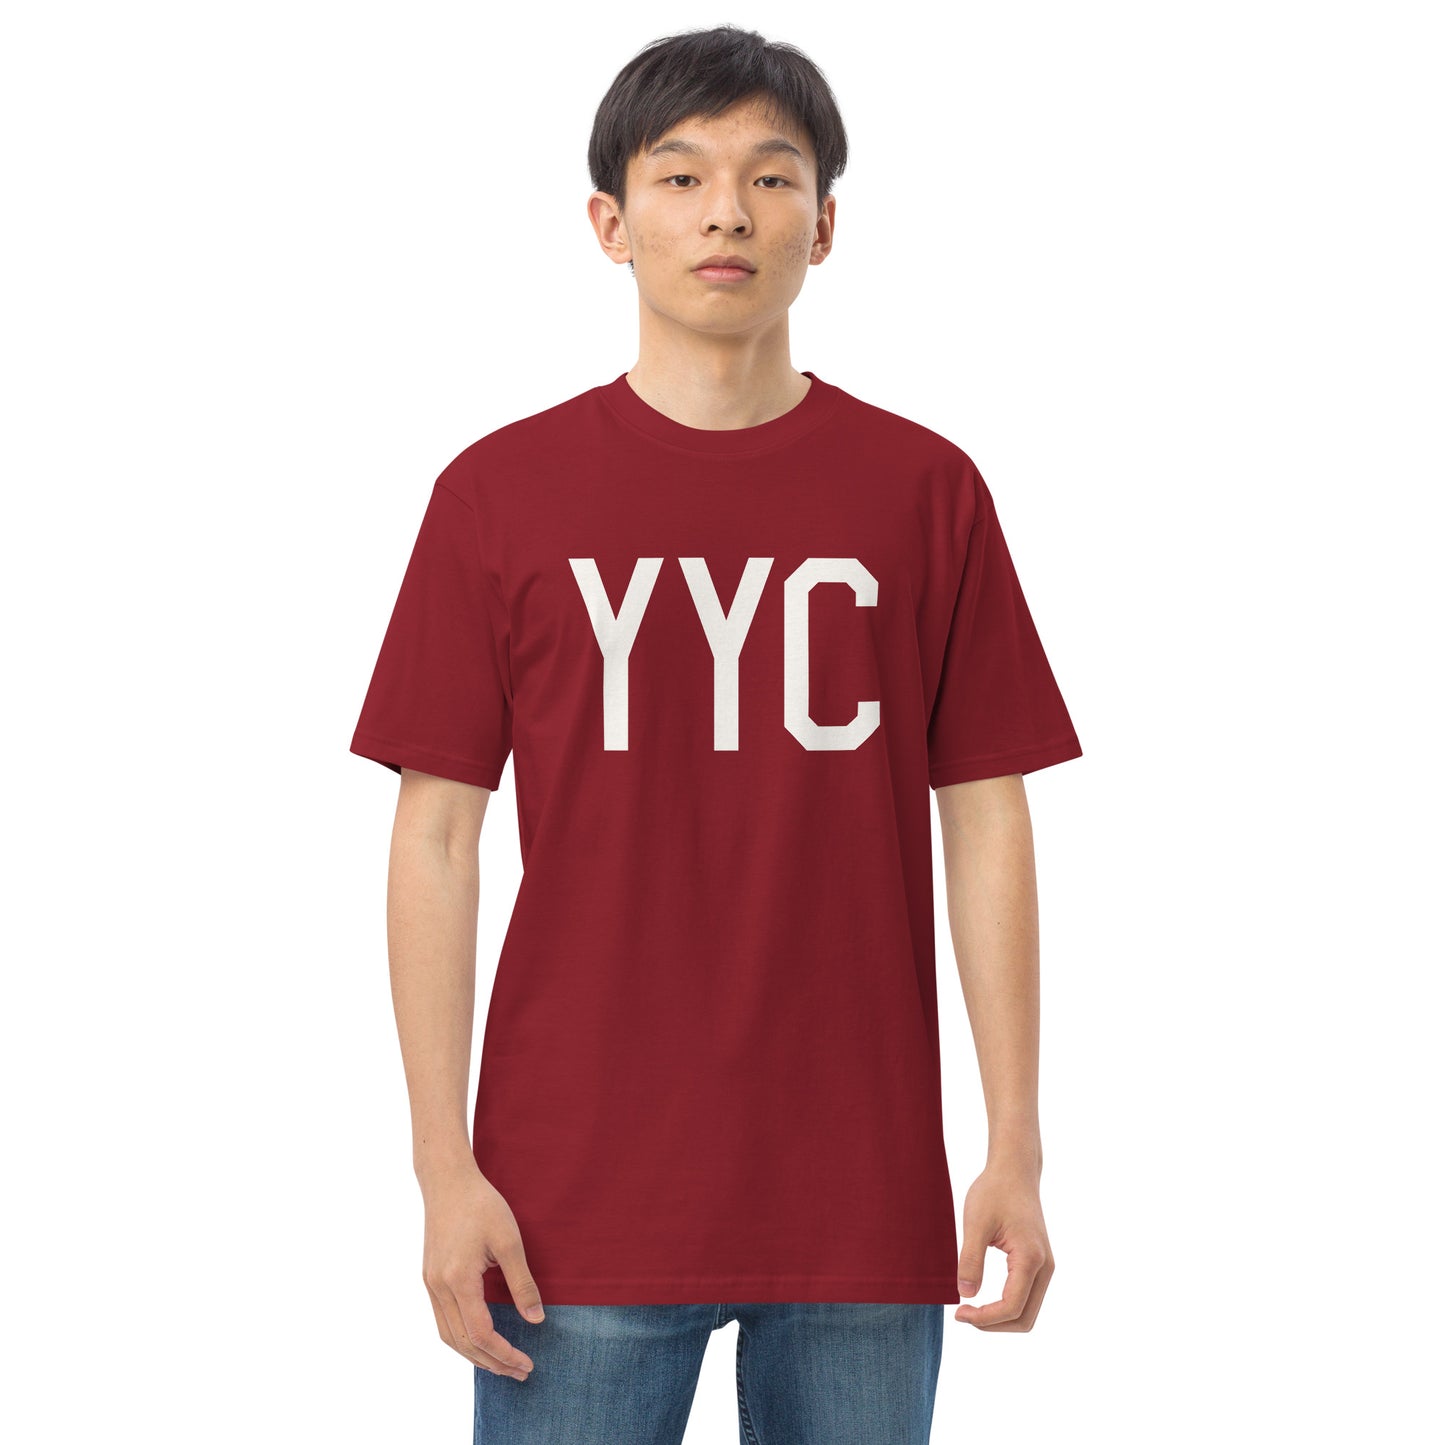 YYC Calgary Alberta Men's Premium Heavyweight T-Shirt